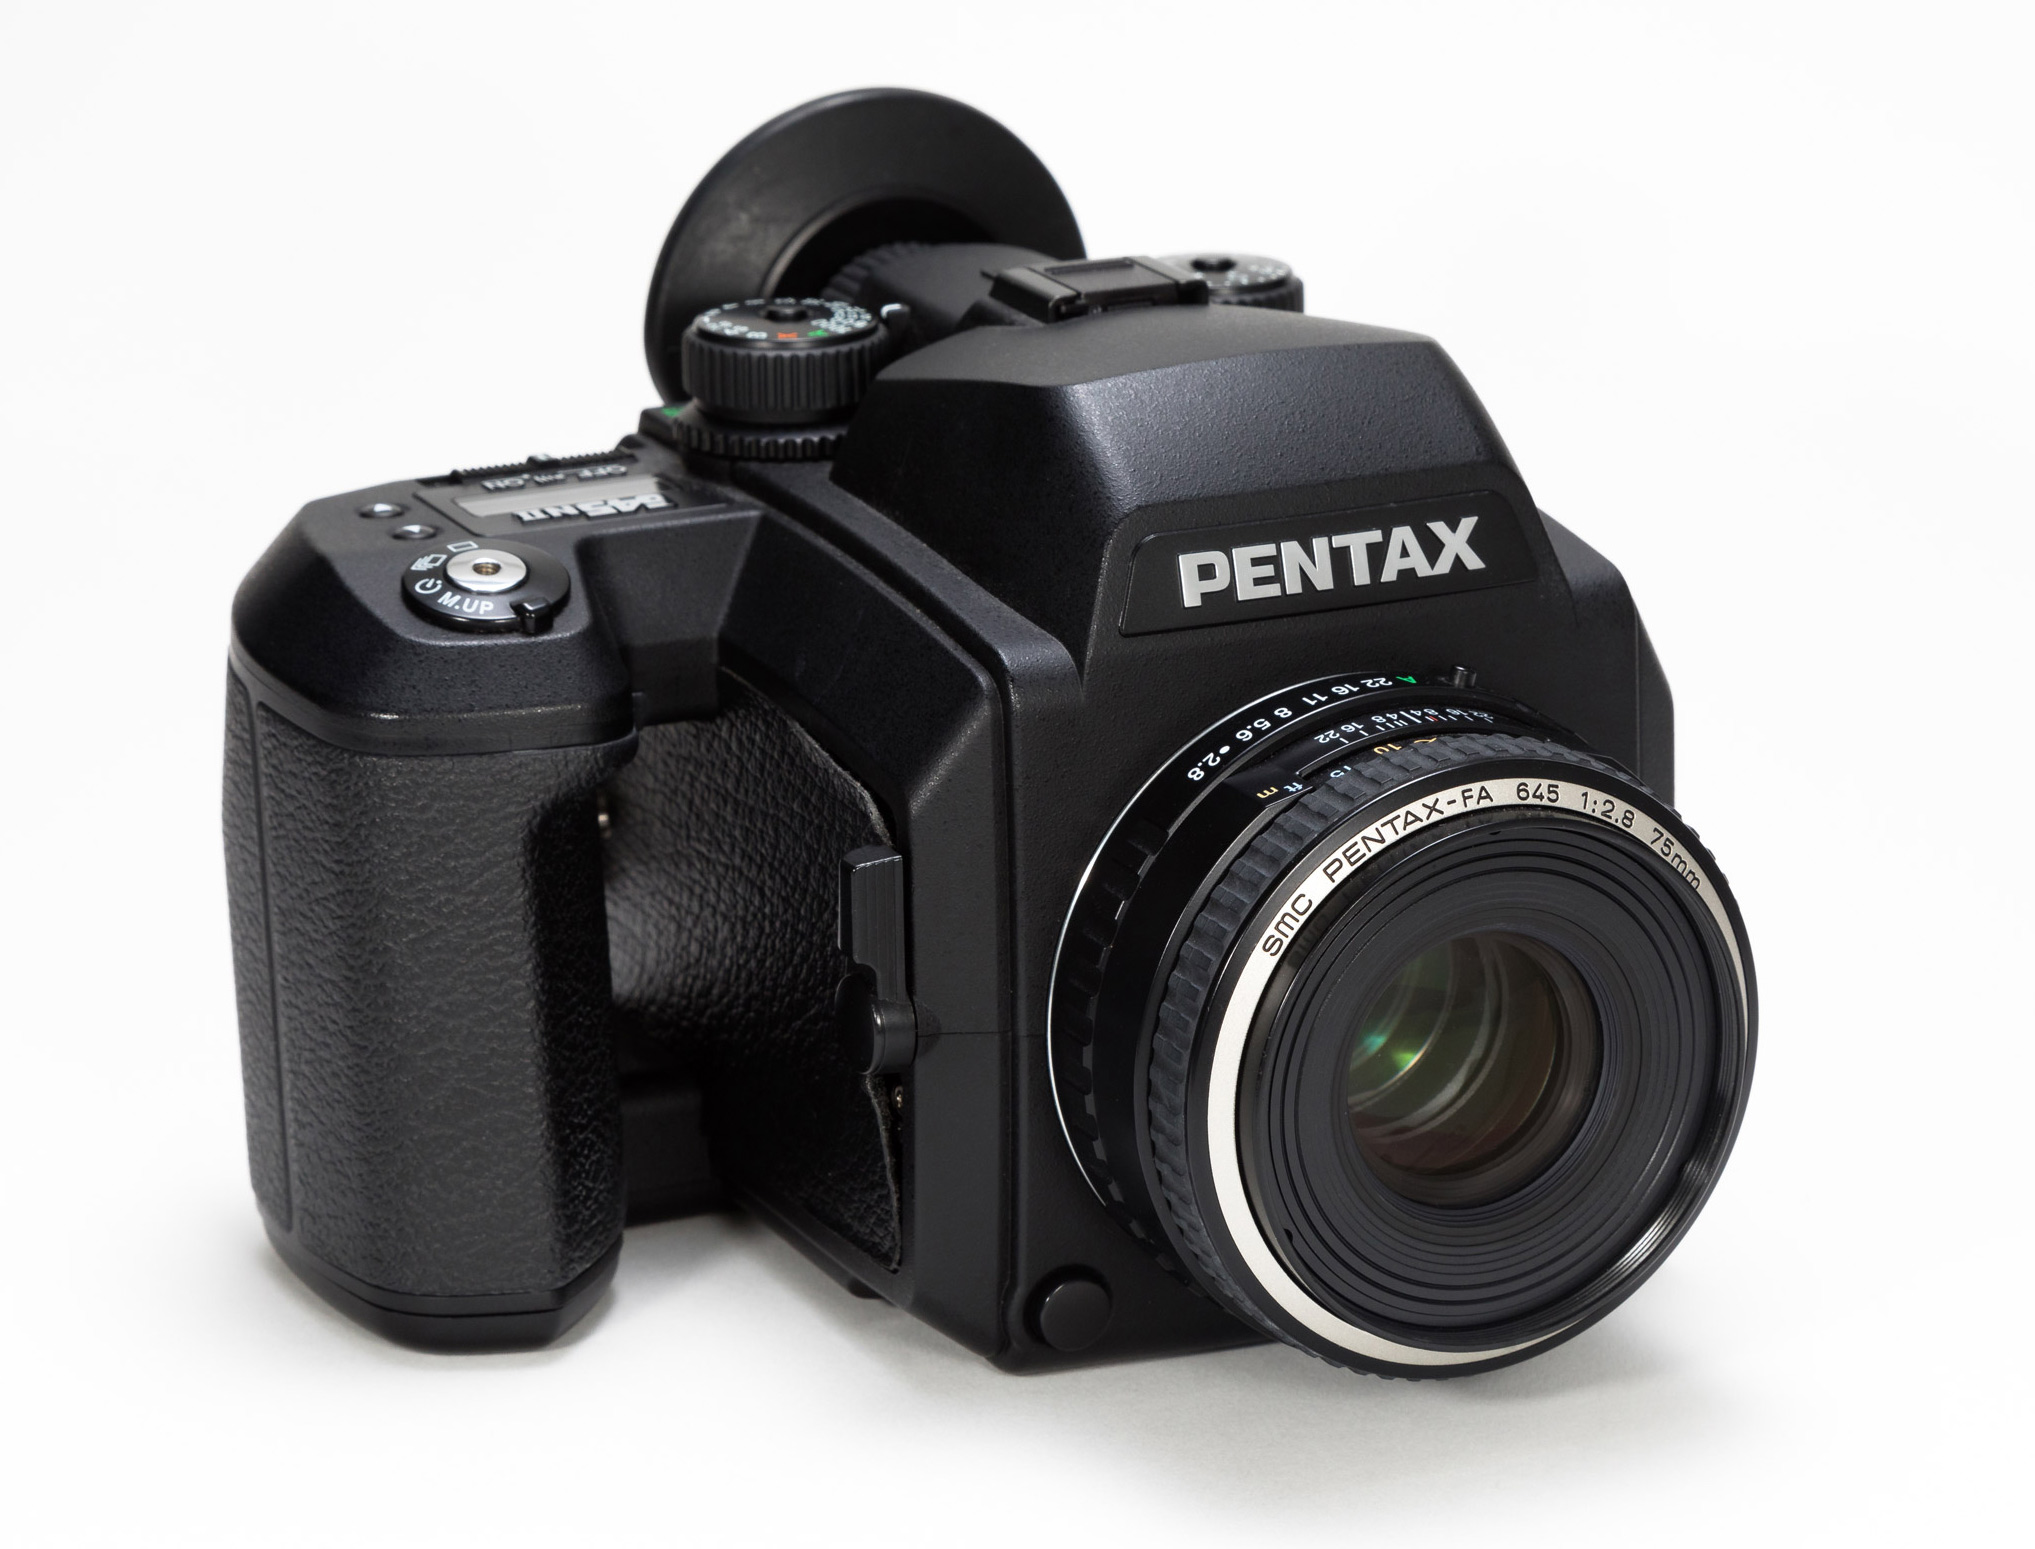 PENTAX 645 中判フィルムカメラ ペンタックス - フィルムカメラ